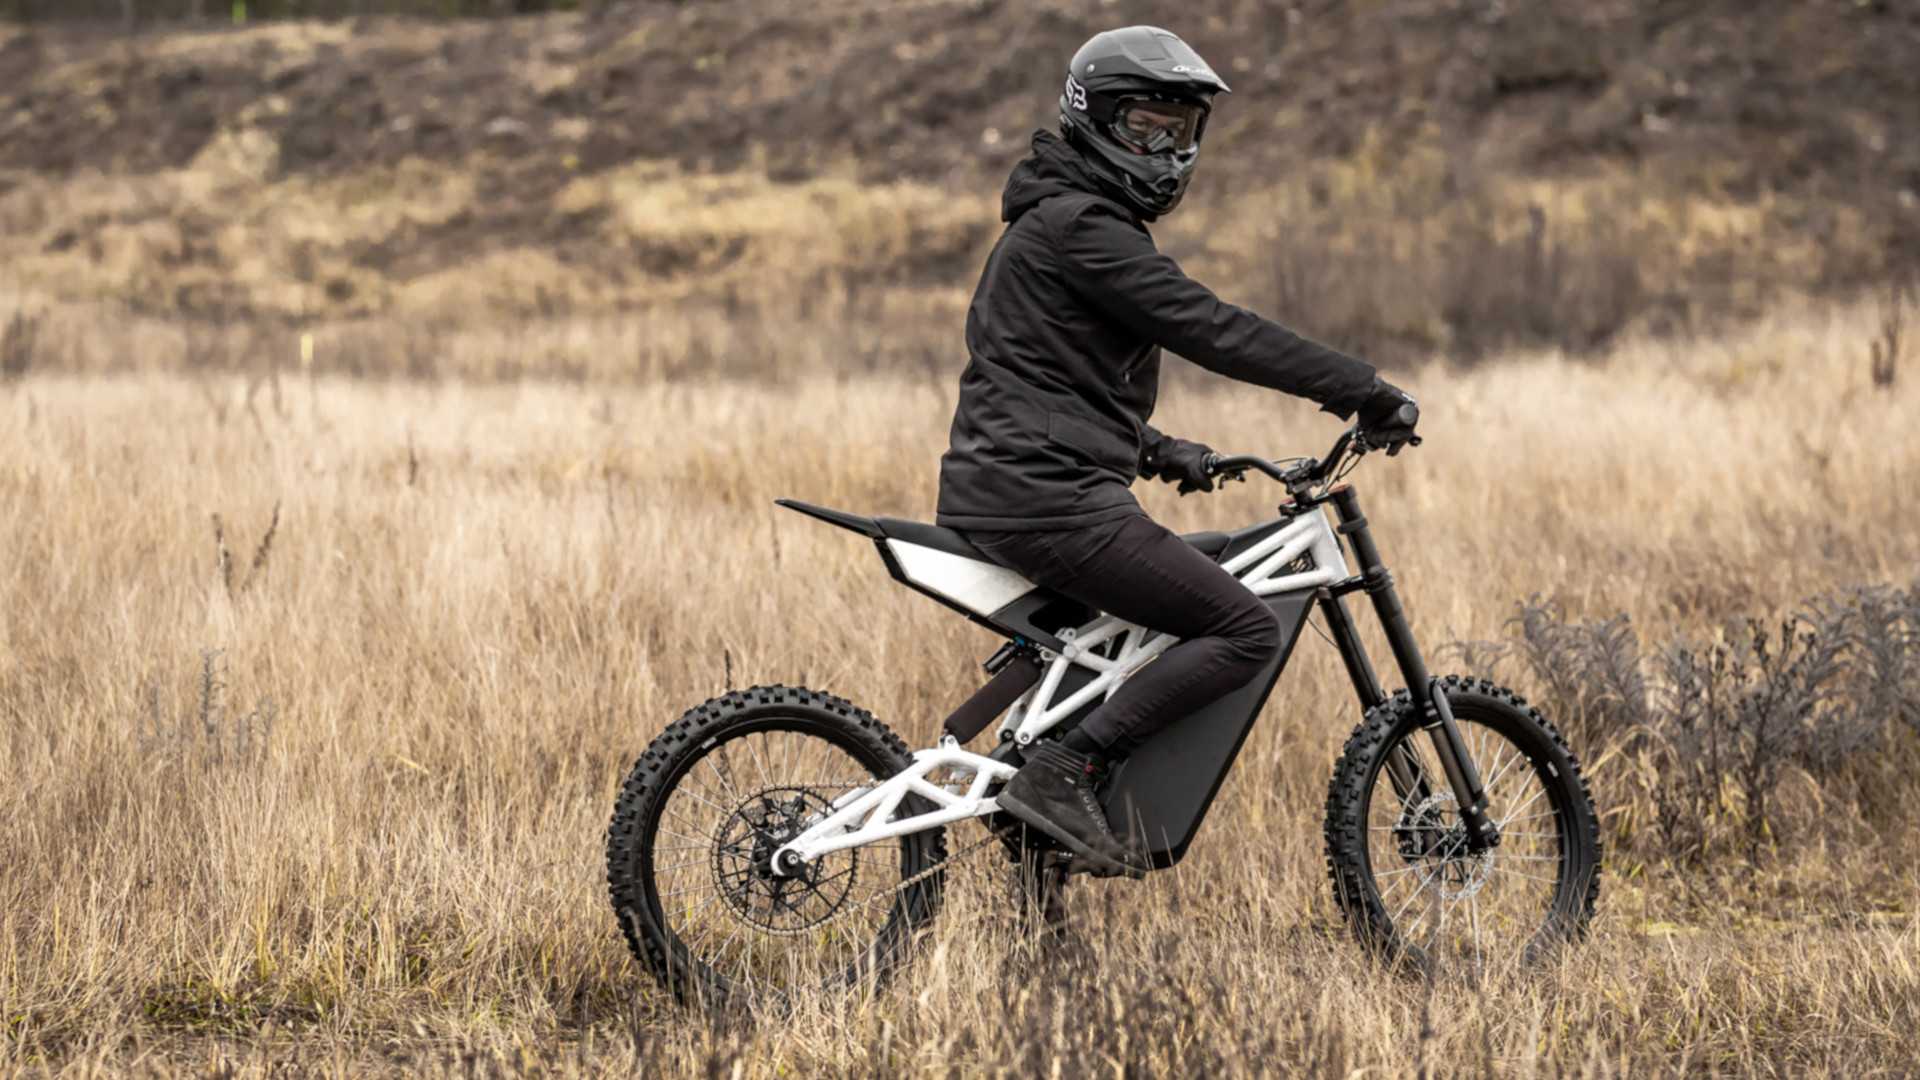 Ubco FRX1, a moto elétrica radical para aventuras nas montanhas